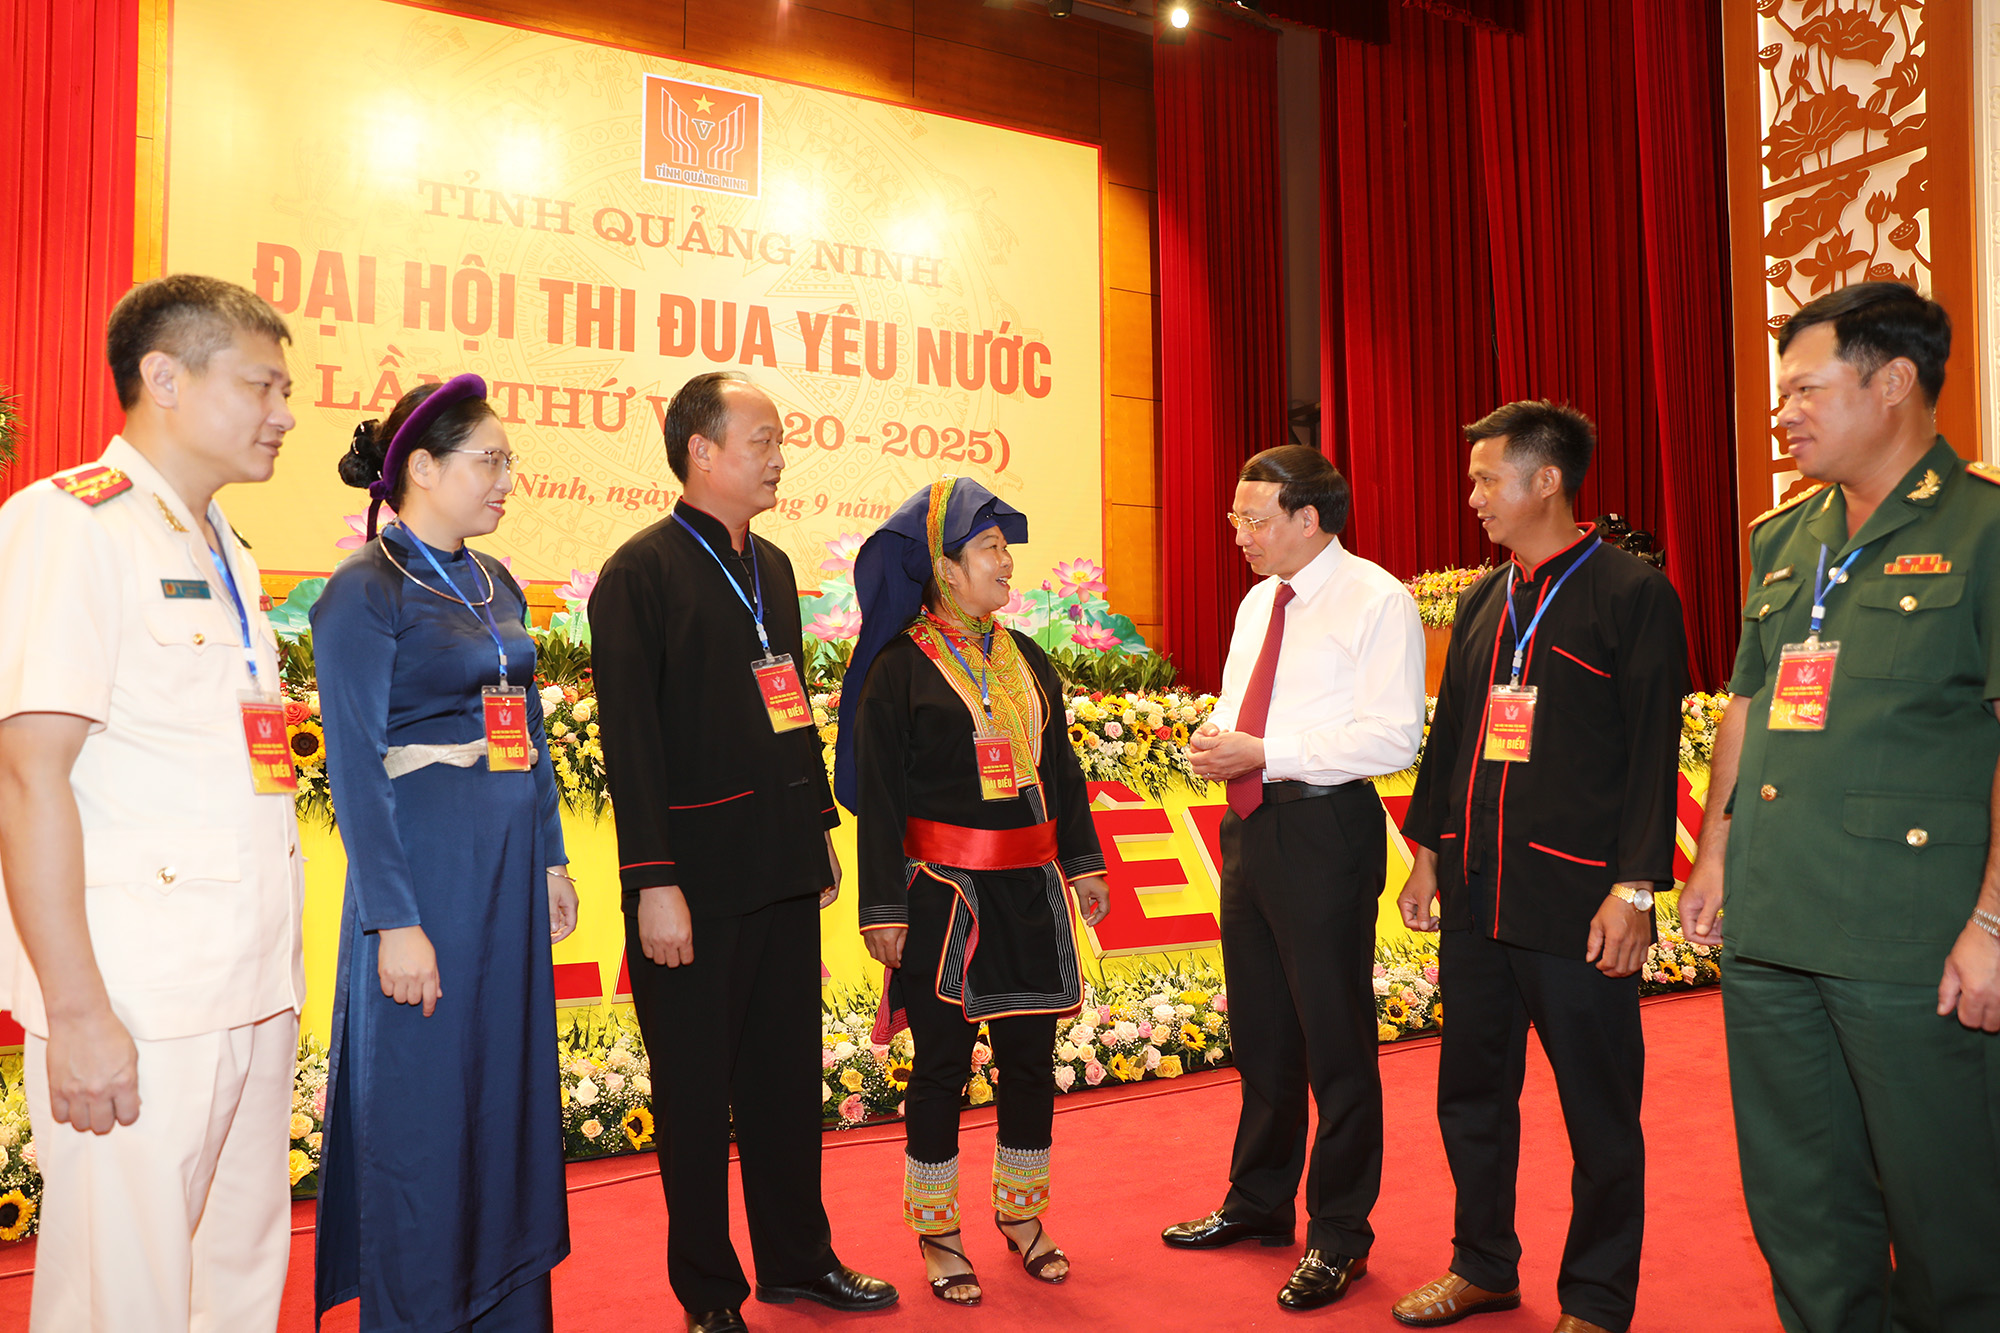 Đồng chí Nguyễn Xuân Ký, Bí thư Tỉnh ủy, Chủ tịch HĐND tỉnh, trò chuyện với đại biểu dự Đại hội